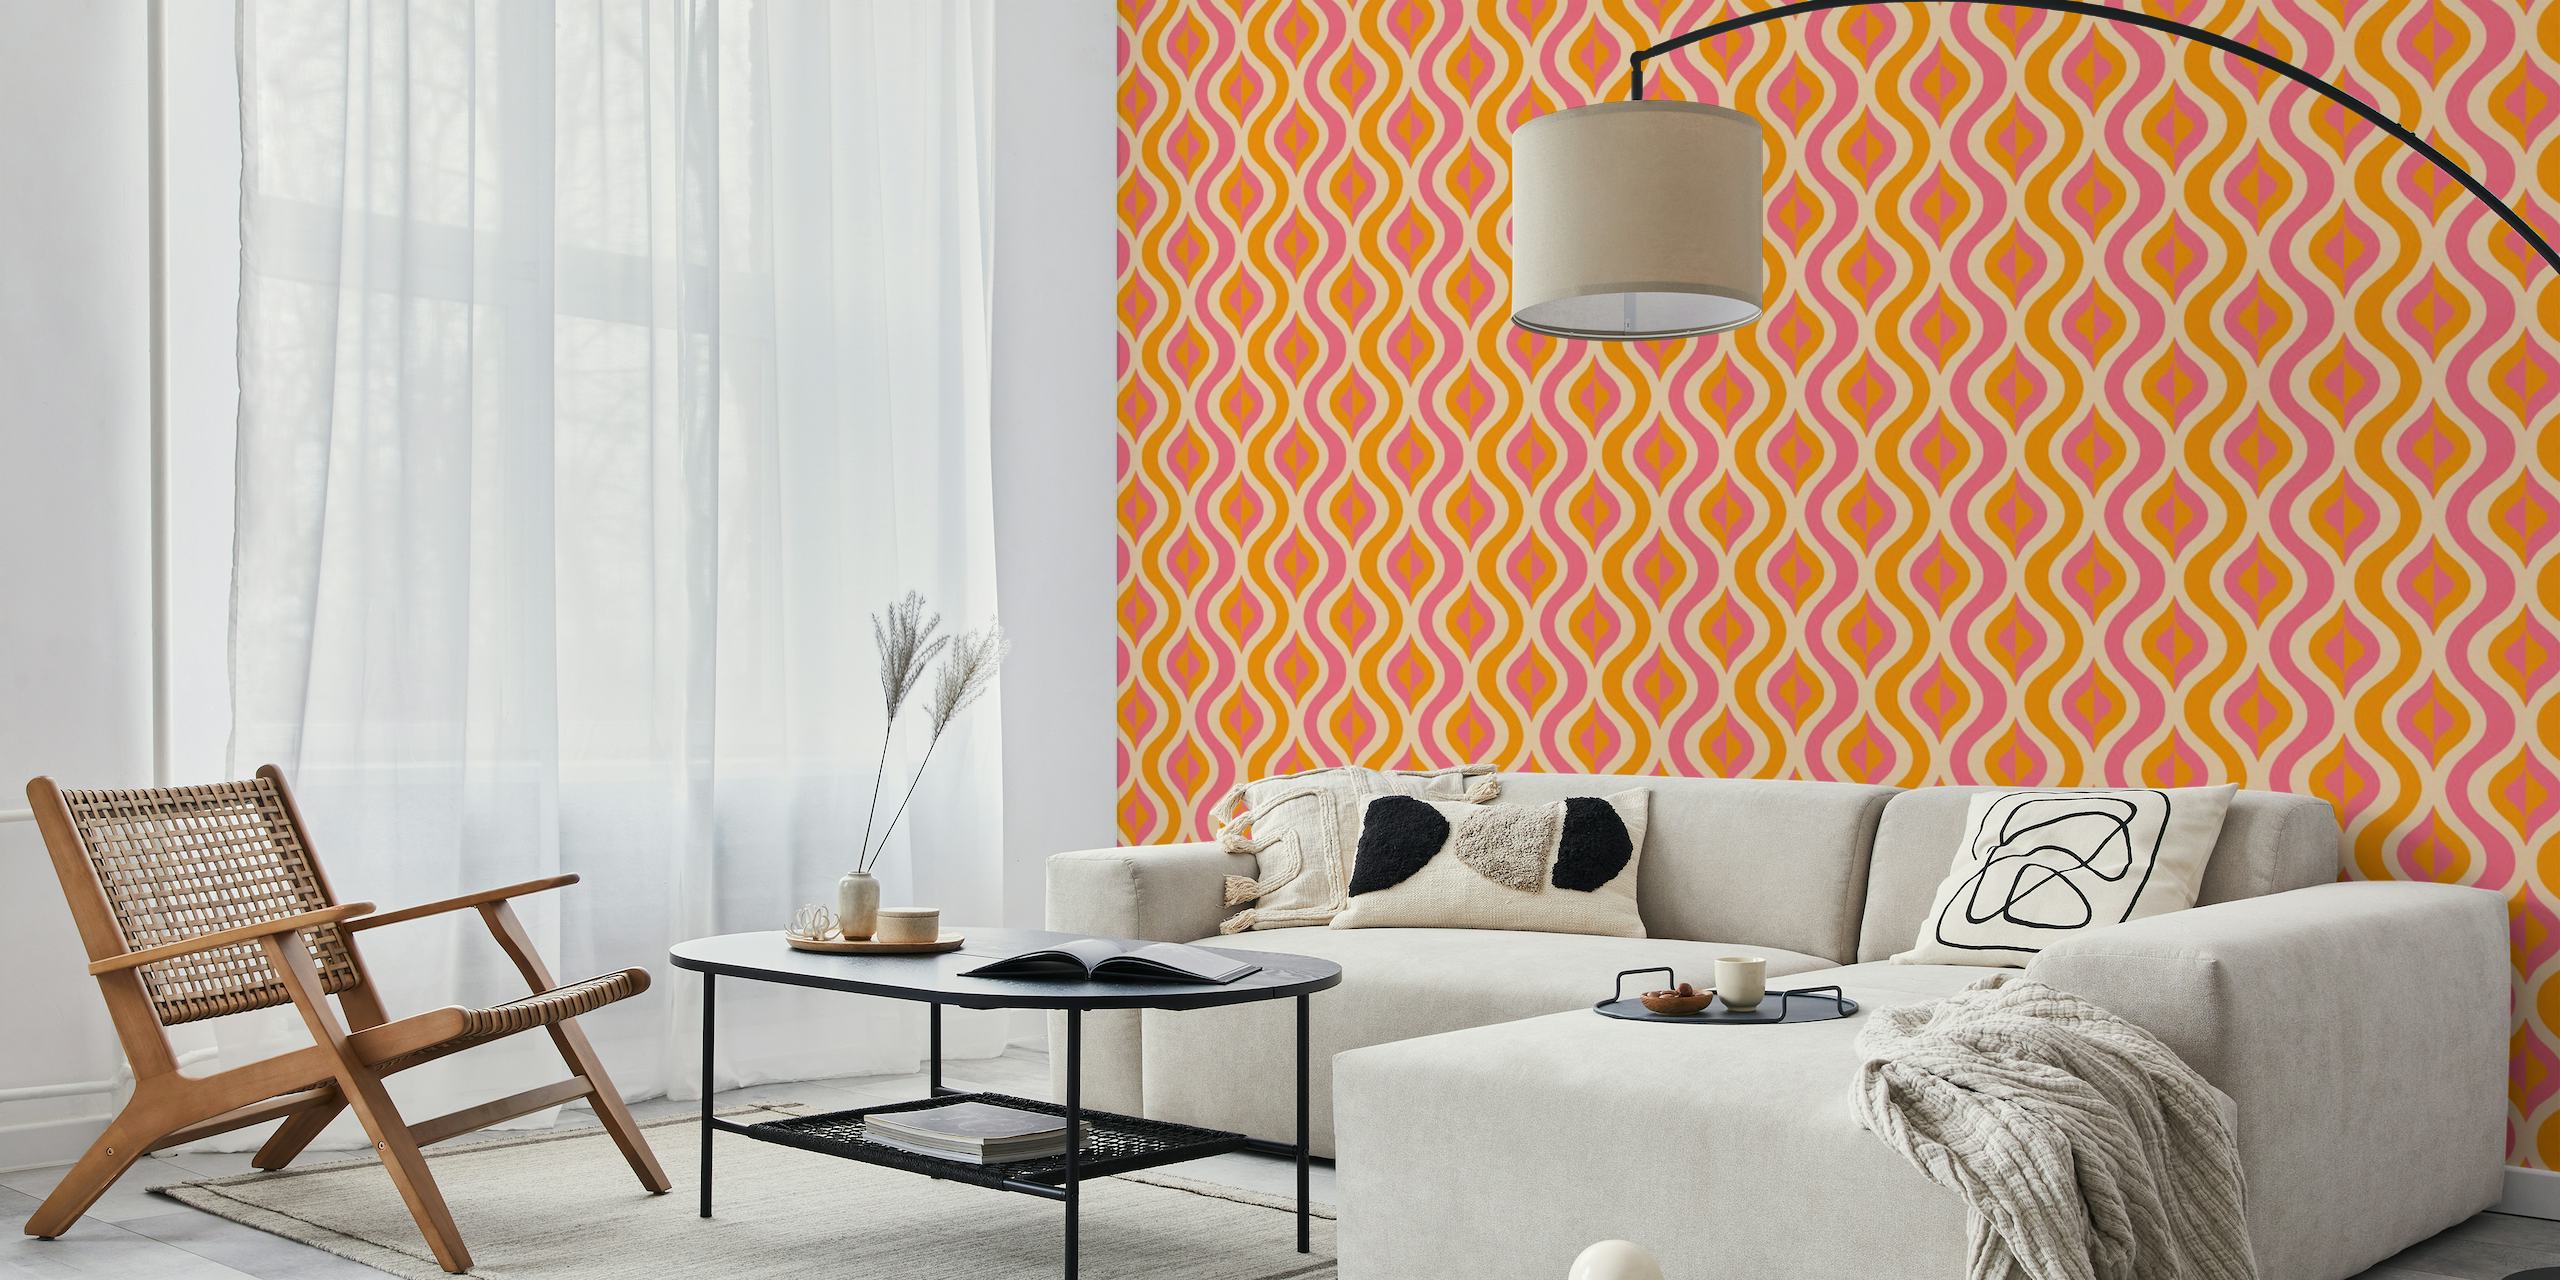 Retro Ornaments IX fotobehang met een symmetrisch patroon en rijke perzik-, oranje- en roze tinten.